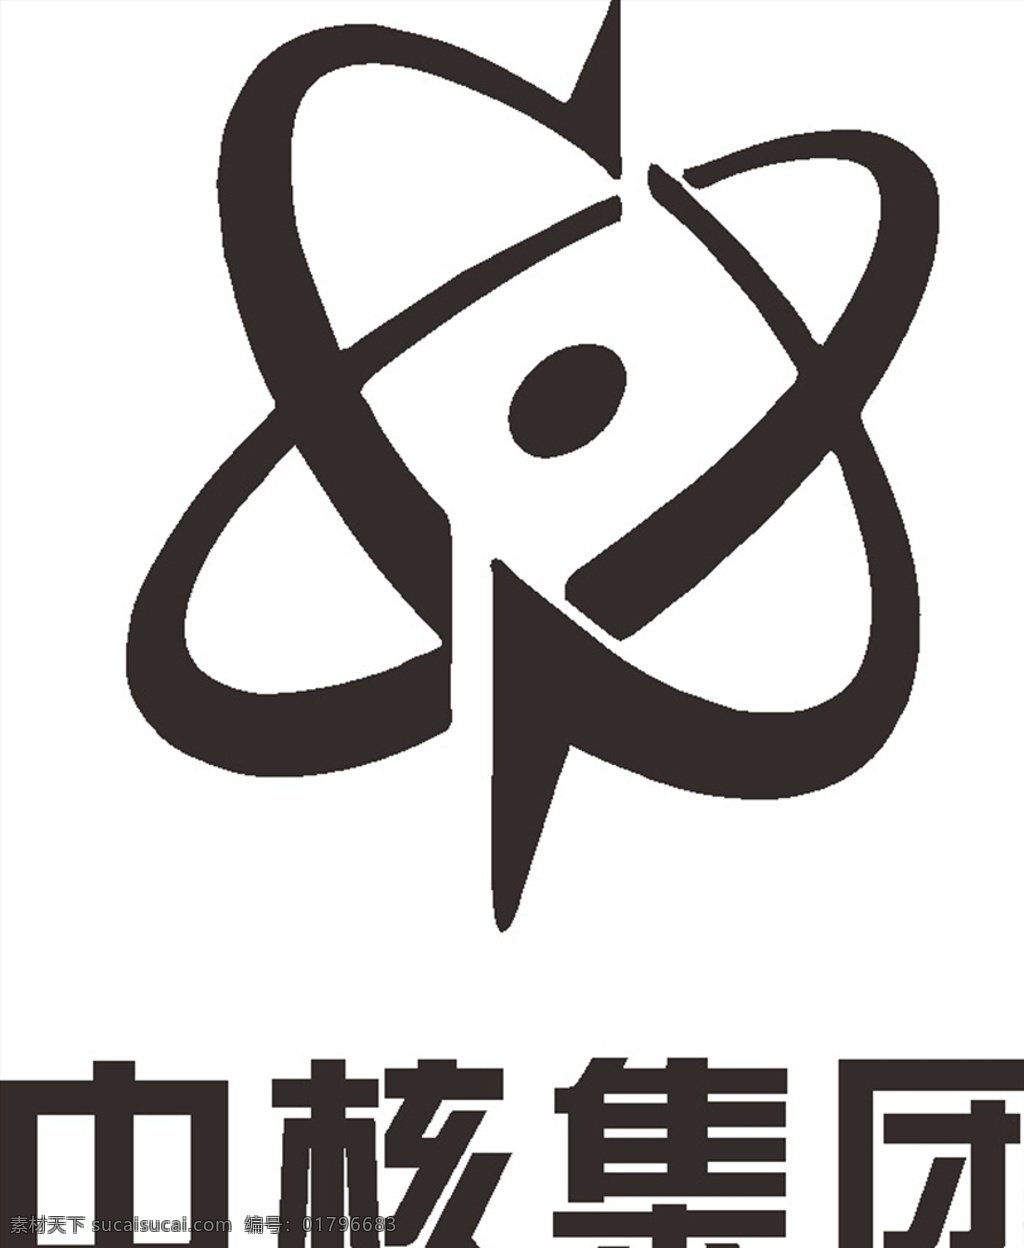 中核集团 中国 国企 企业 建筑 logo 标志 标识 图标 工程 标志图标